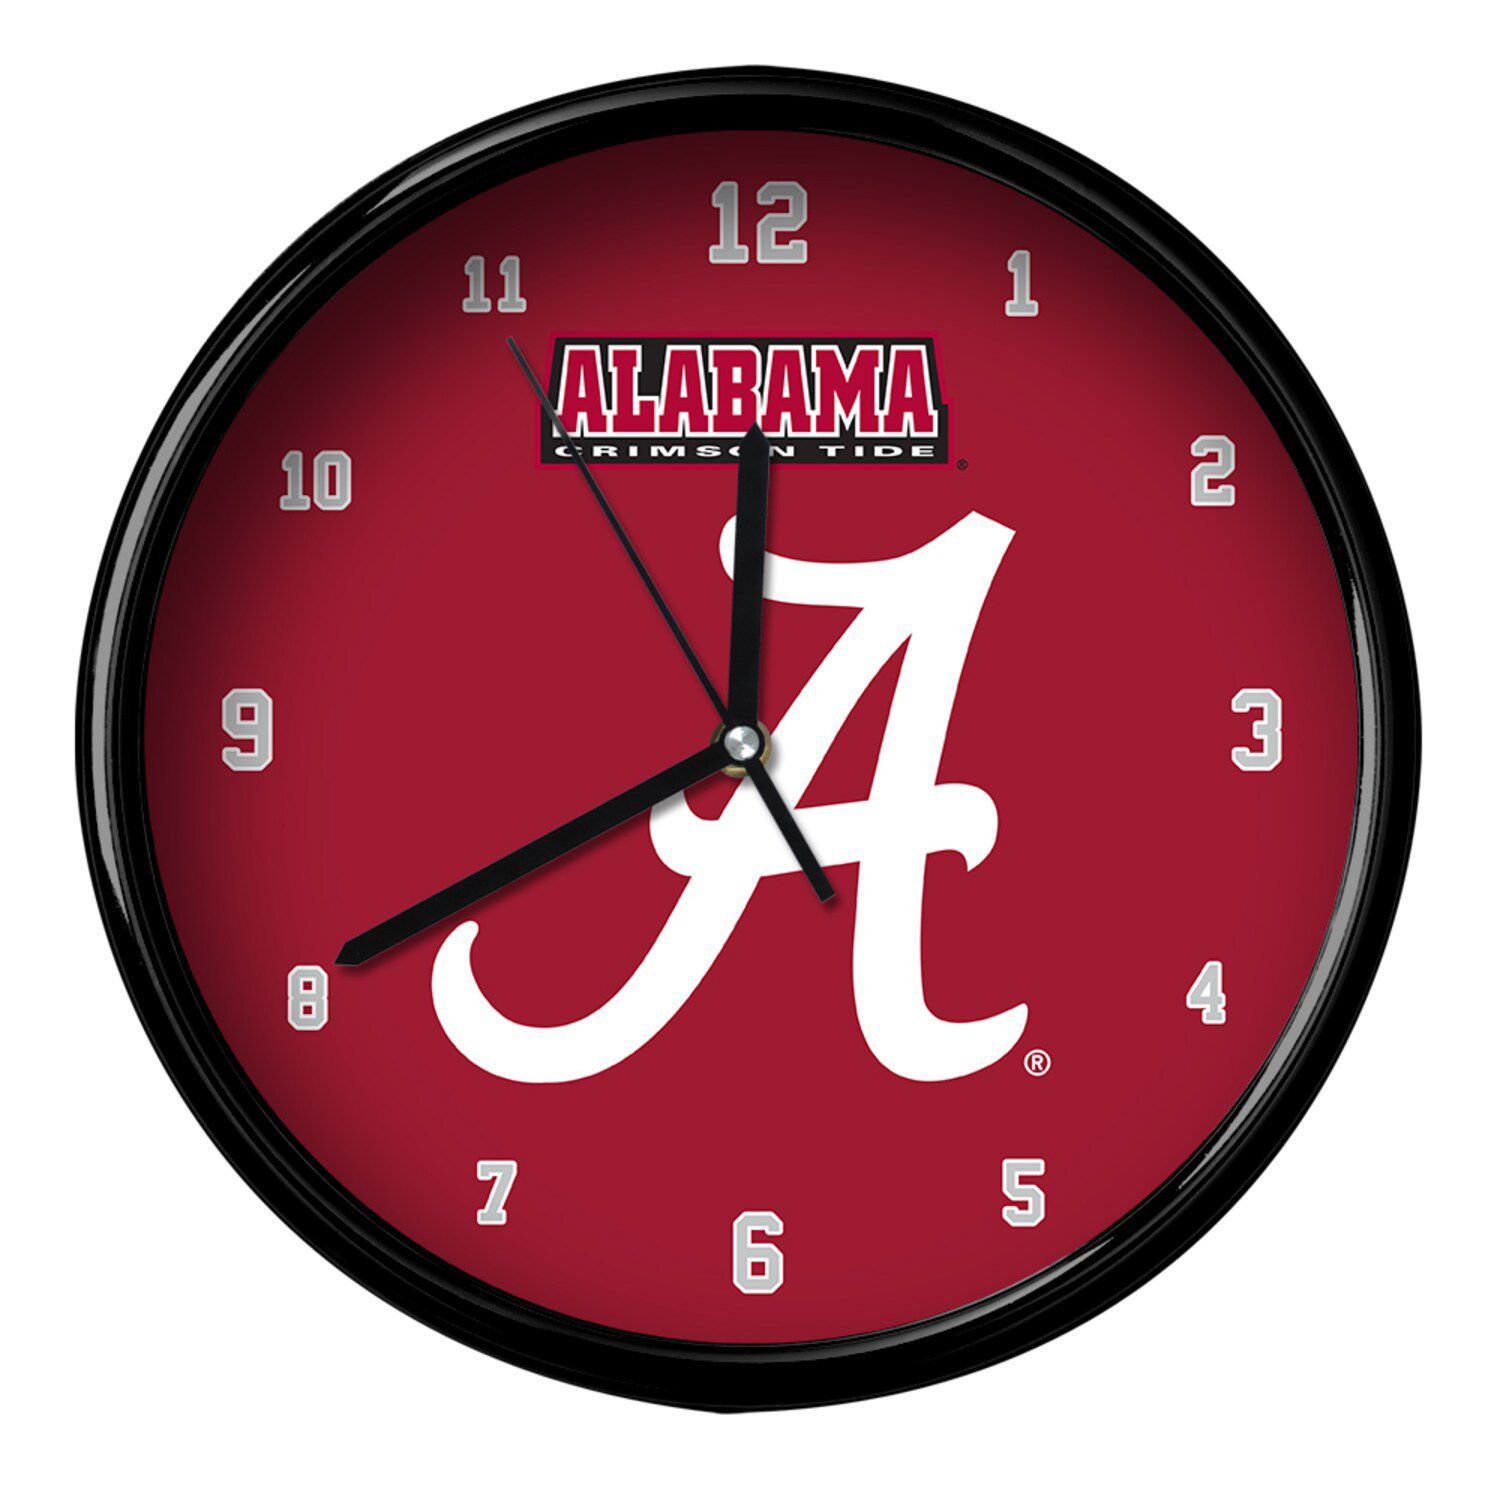 Image for Unbranded Alabama Crimson Tide Black Rim Basic Clock at Kohl's.